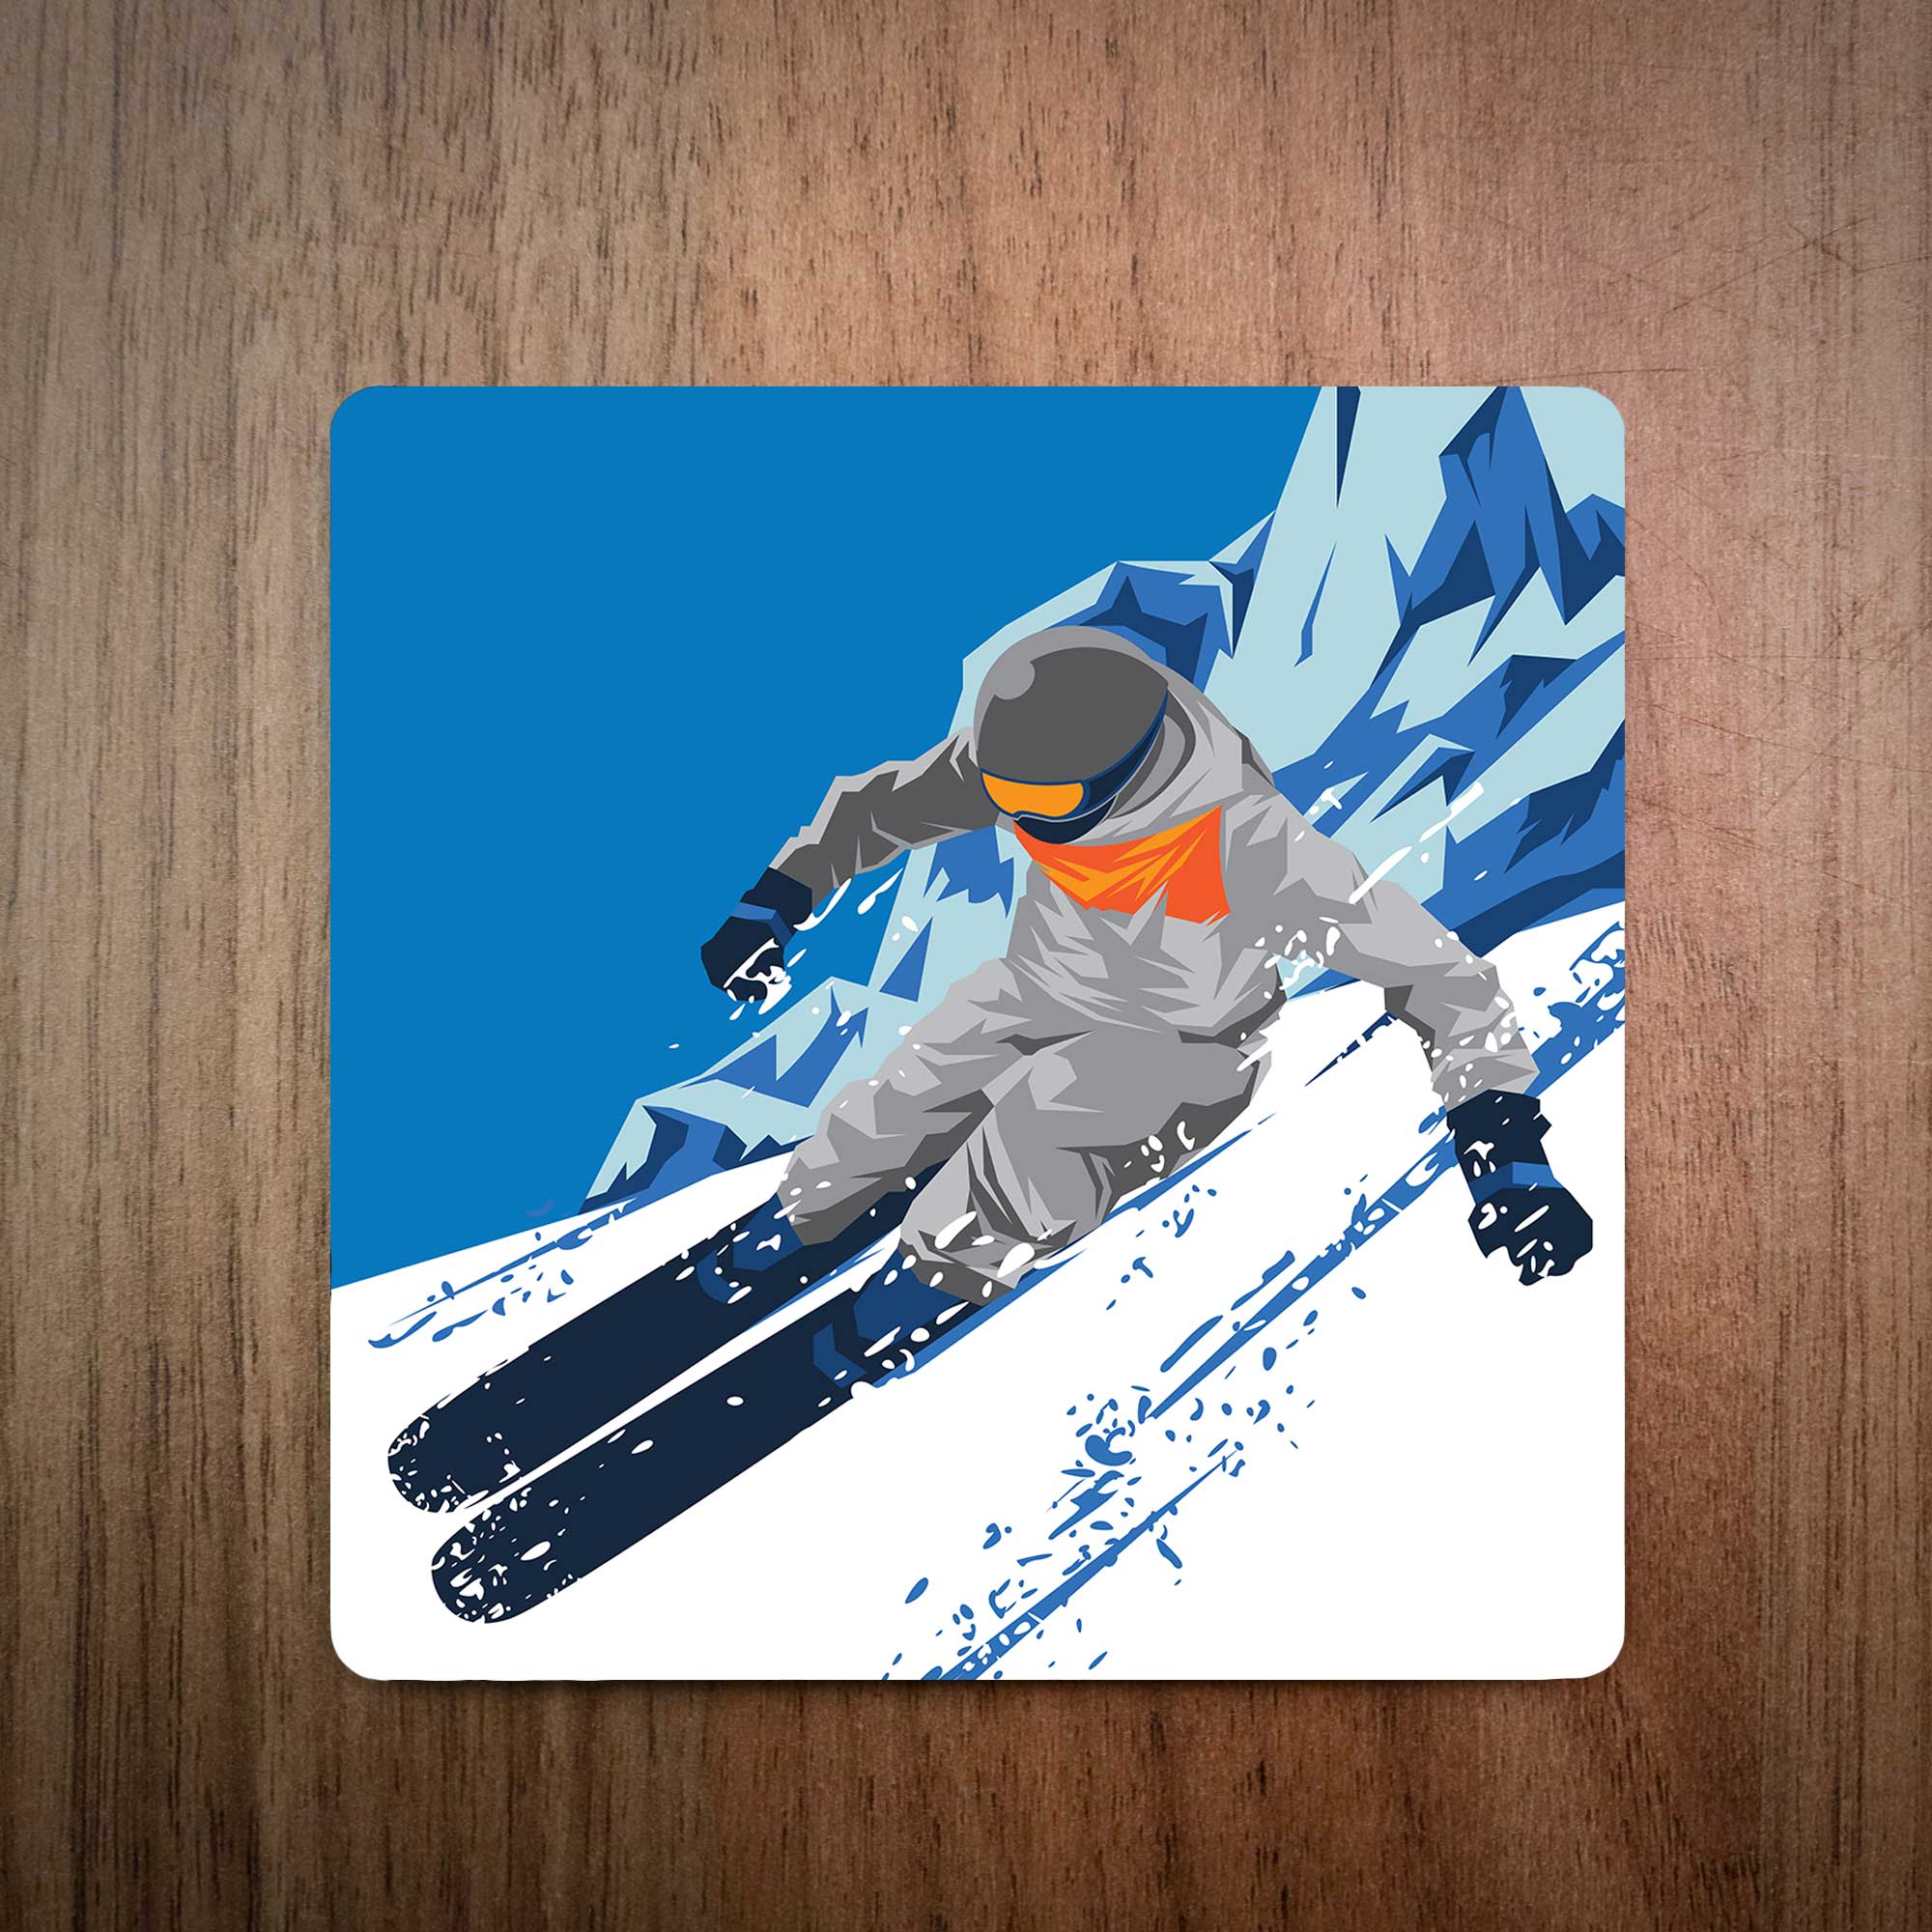 Carving Powder Turns Ski Coaster